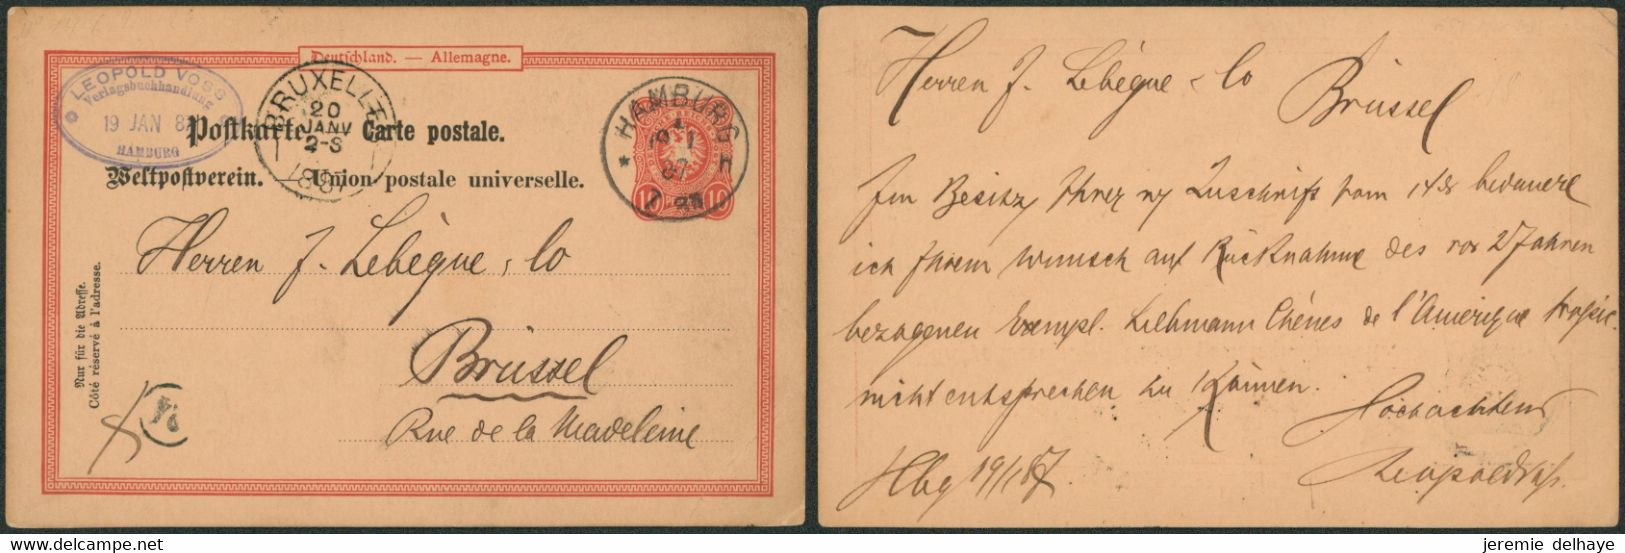 EP Allemand 10 Penning Rouge Expédié De Hamburg (1887) > Brussel, Bruxelles + Cachet Arrivée "Bruxelles I" (à Batonnet) - Rural Post